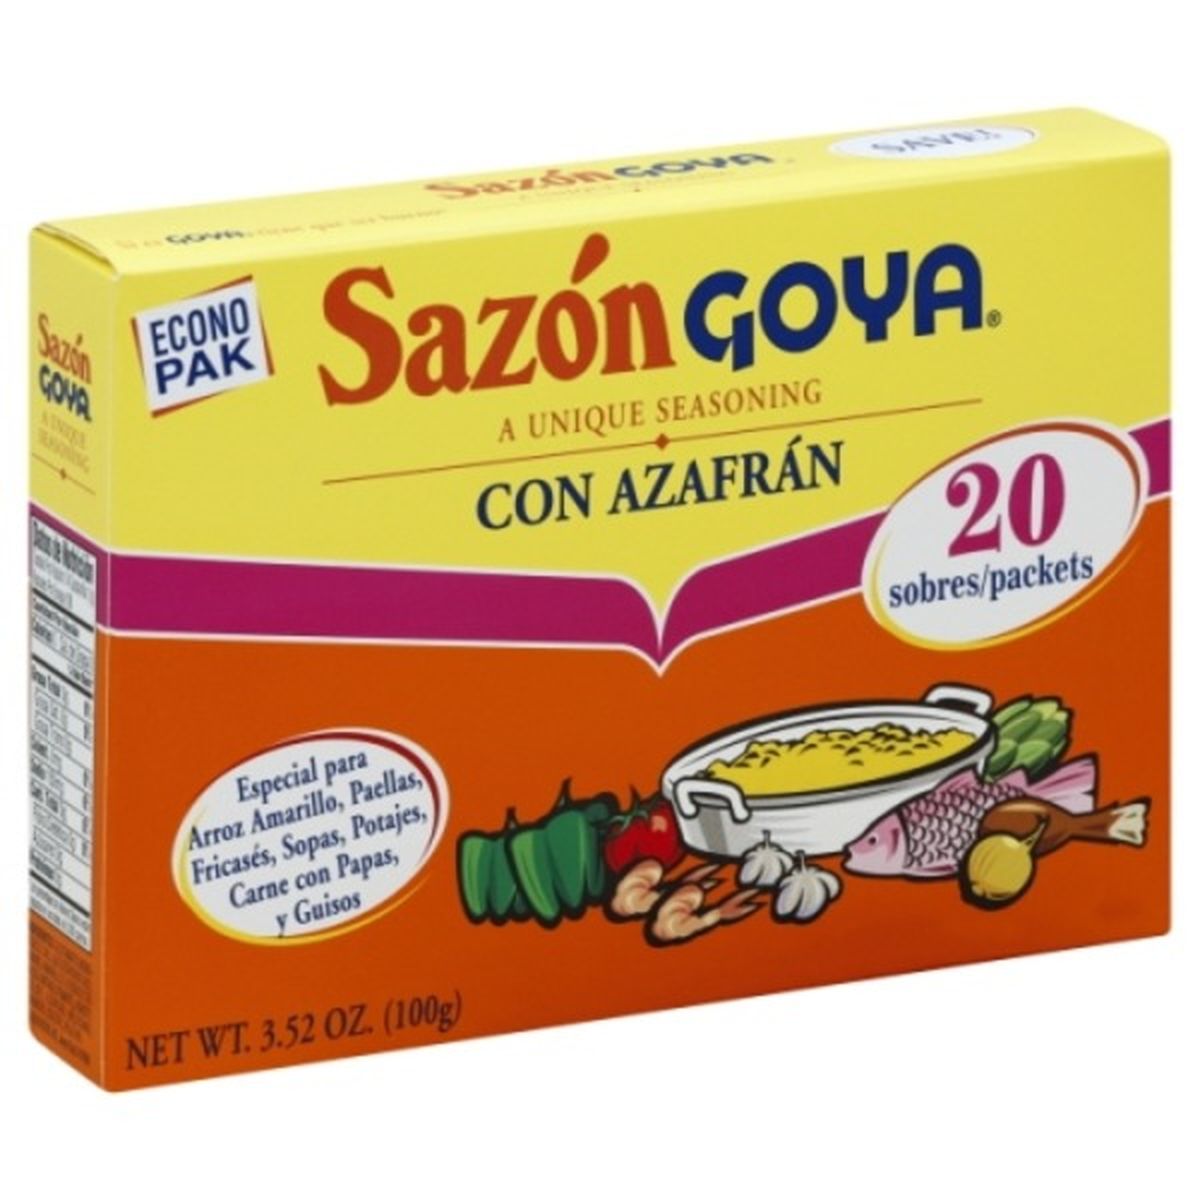 Calories in Goya Seasoning, Econo Pak